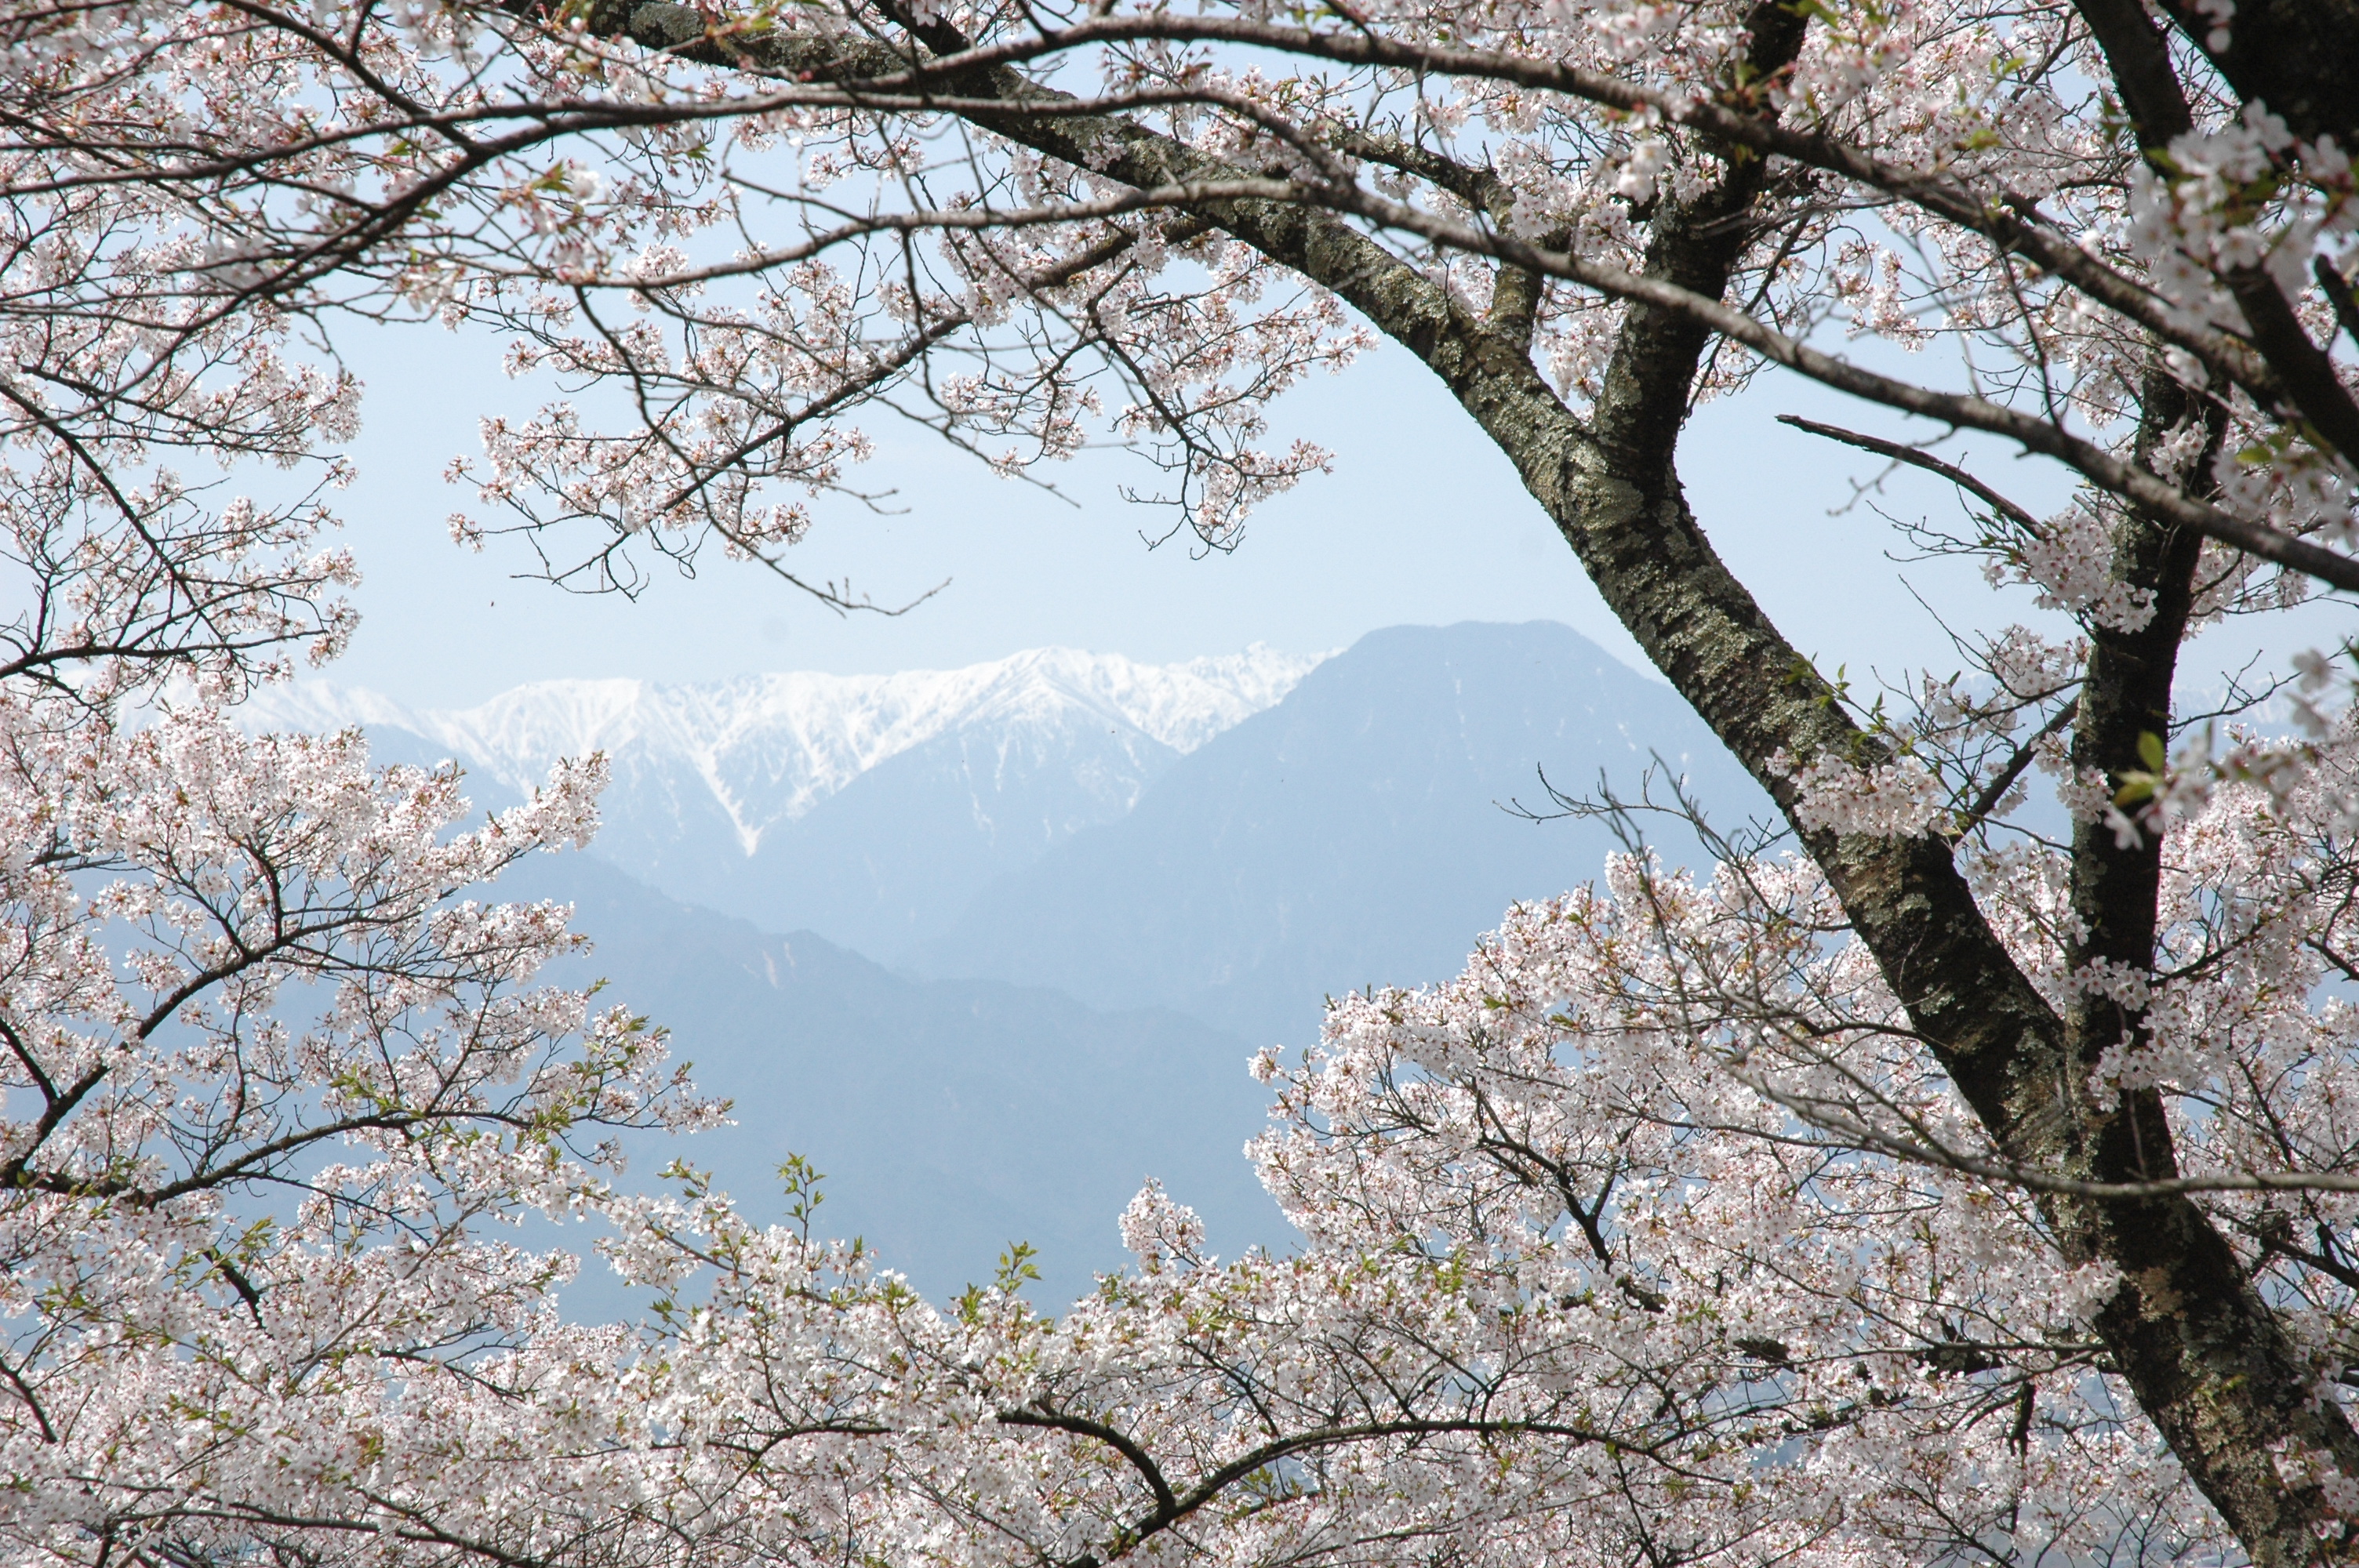 ดอกซากุระบานสะพรั่งและเทือกเขาแอลป์เมื่อมองจากภูเขาฮิคารุโจ